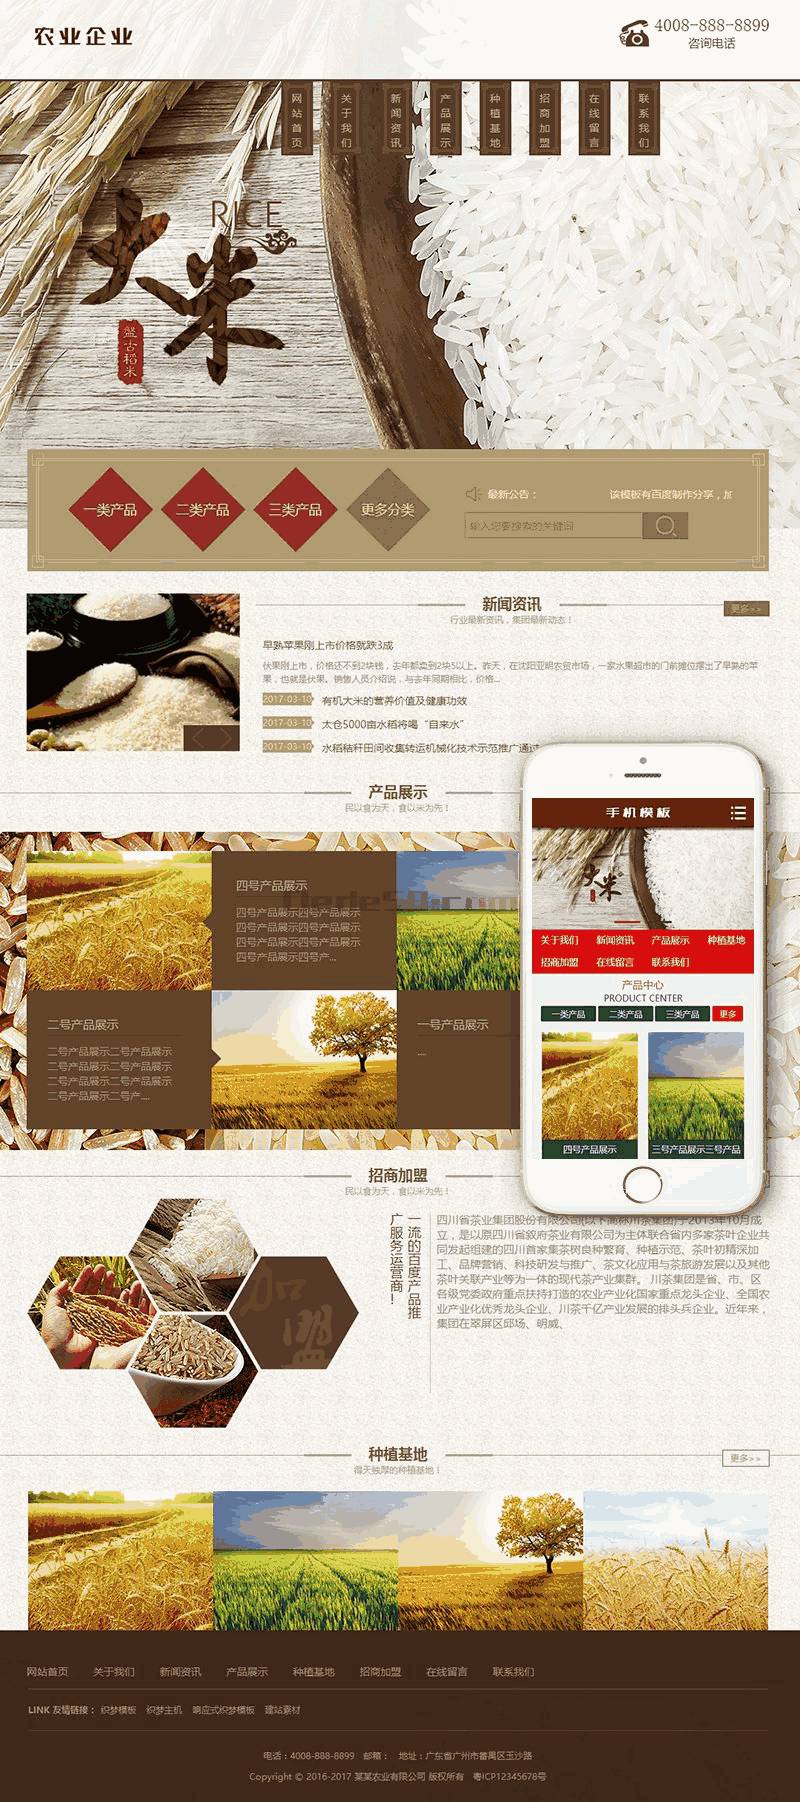 谷类大米农作物农业网站Wordpress模板自适应手机端效果图